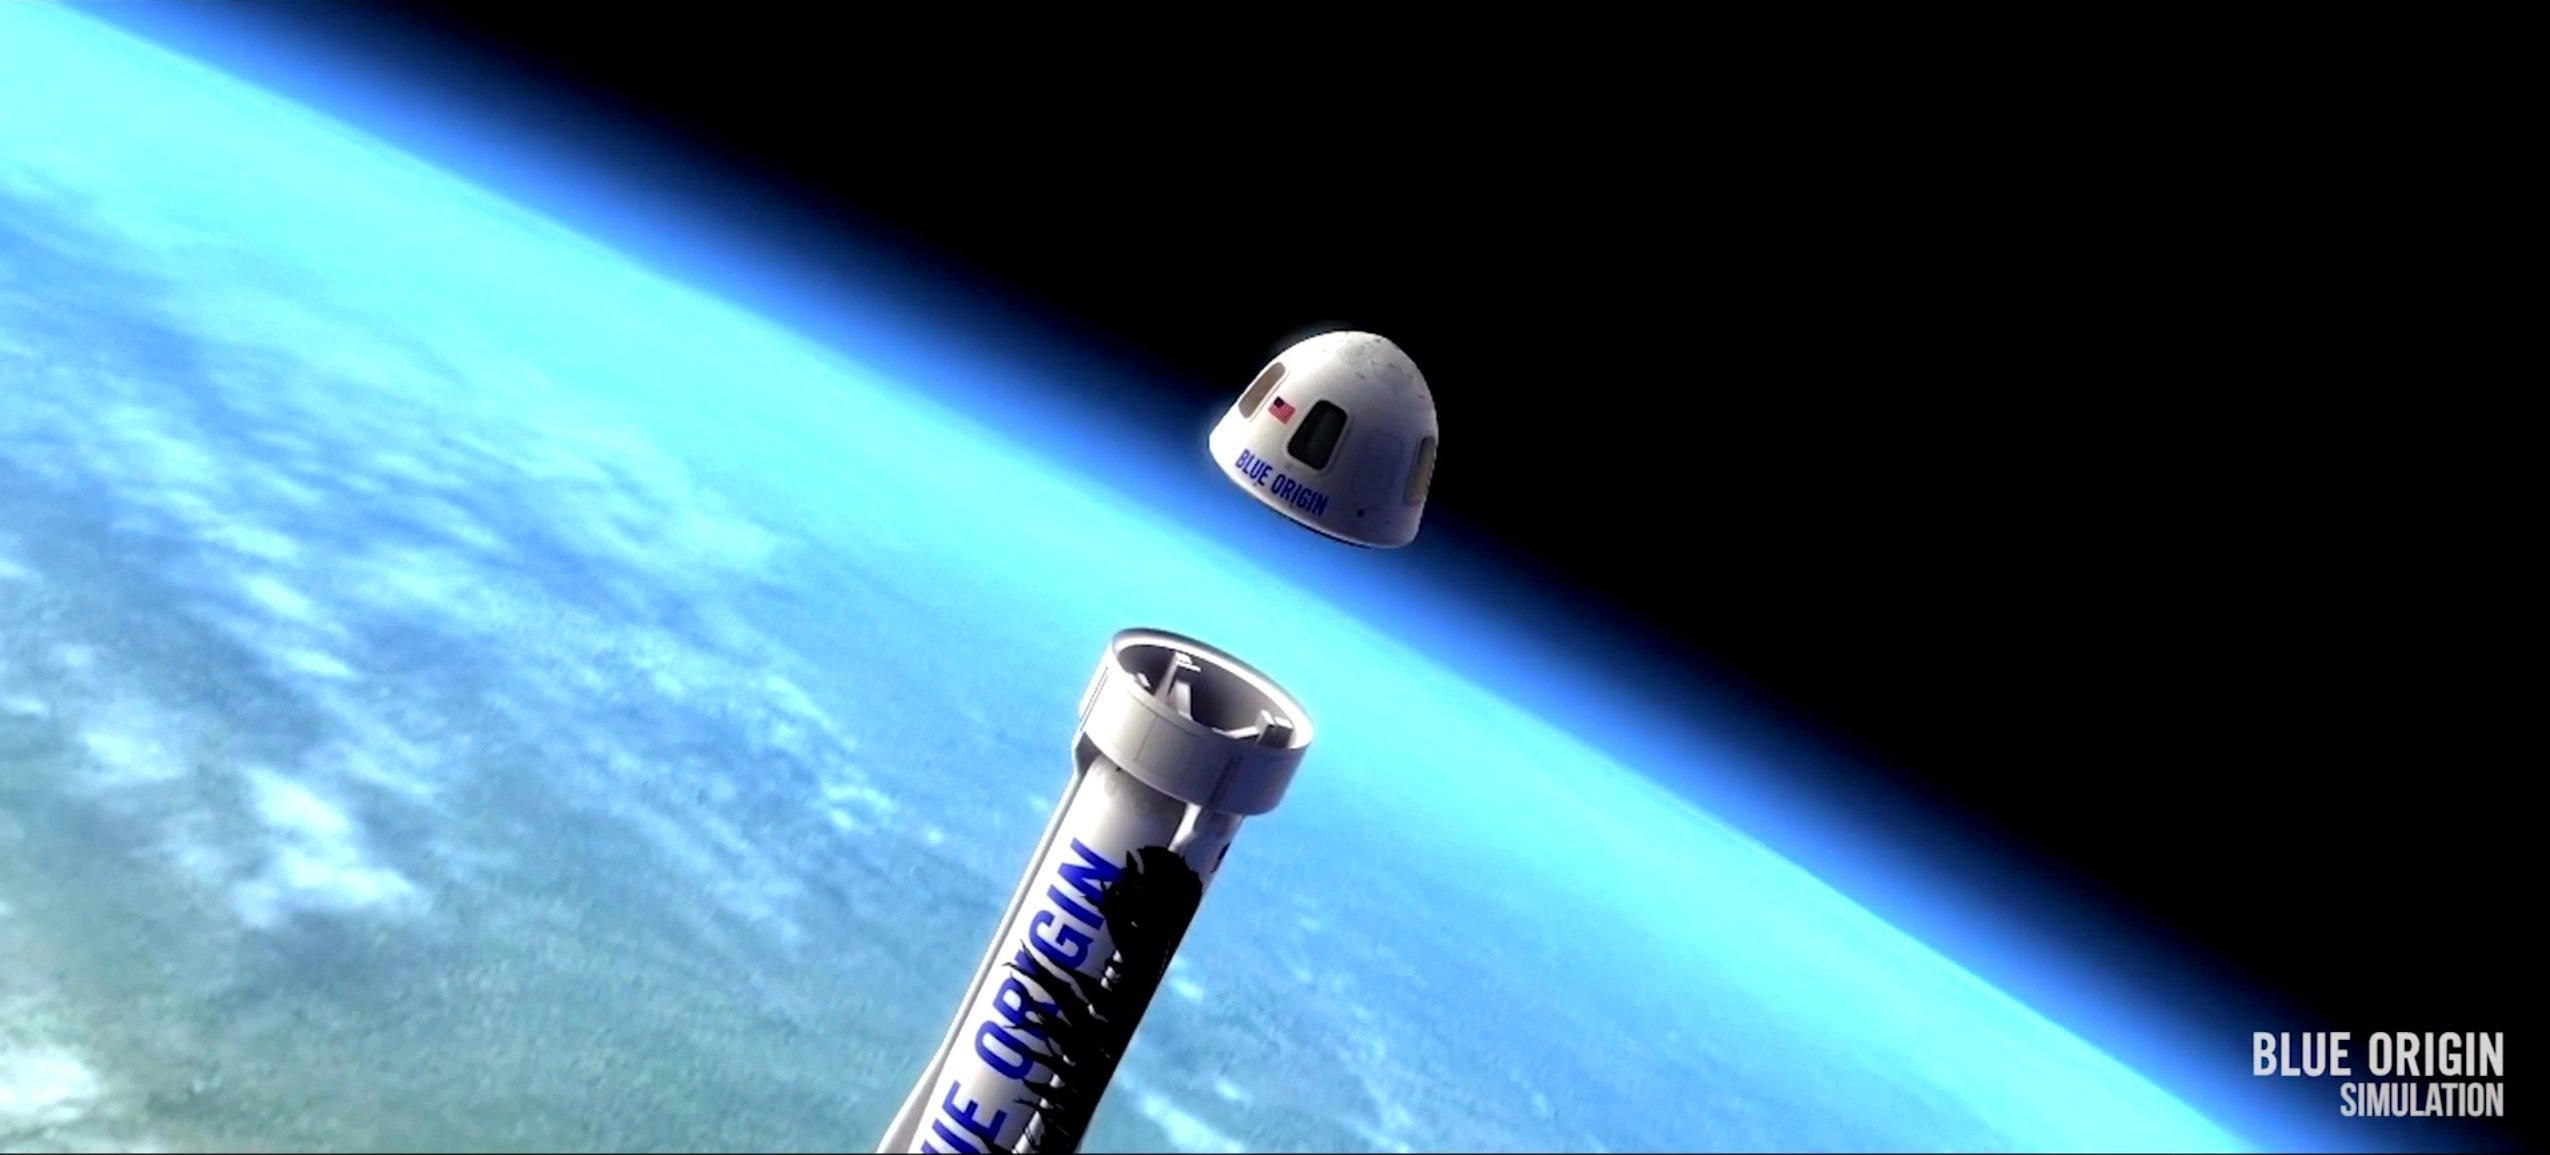 Die New Shepard ist bis in eine Höhe von 100 km geflogen und hat dort die Raumkapsel abgekoppelt, die anschließend von drei Fallschirmen gebremst sicher auf der Erde gelandet ist. Künftig sollen auf diese Weise Weltraumtouristen die Schwerelosigkeit erleben können.